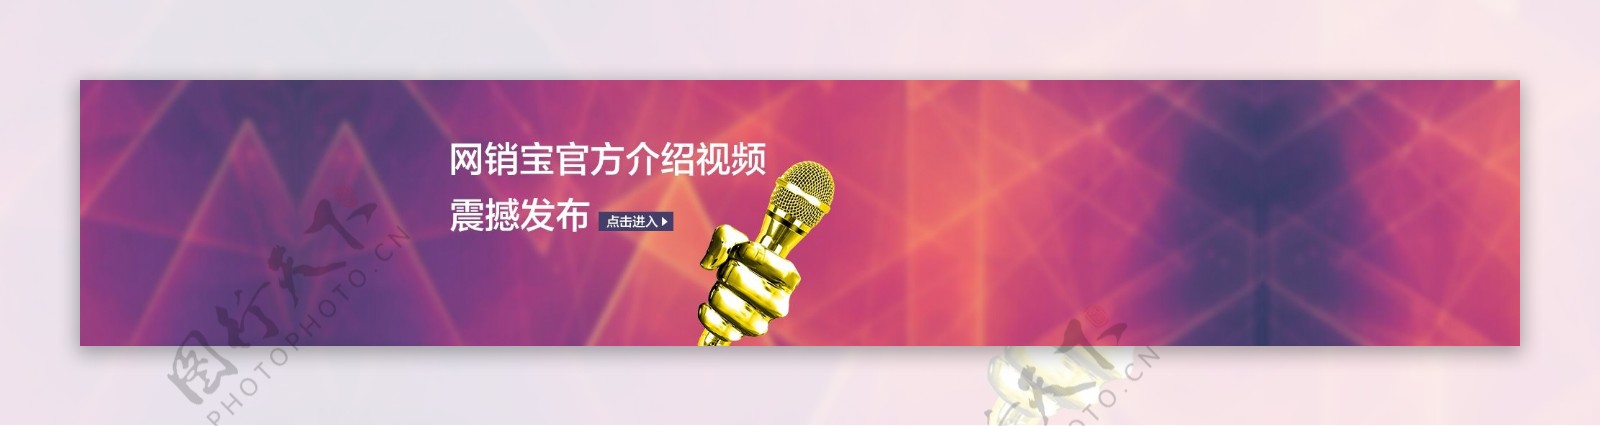 网销宝视频banner